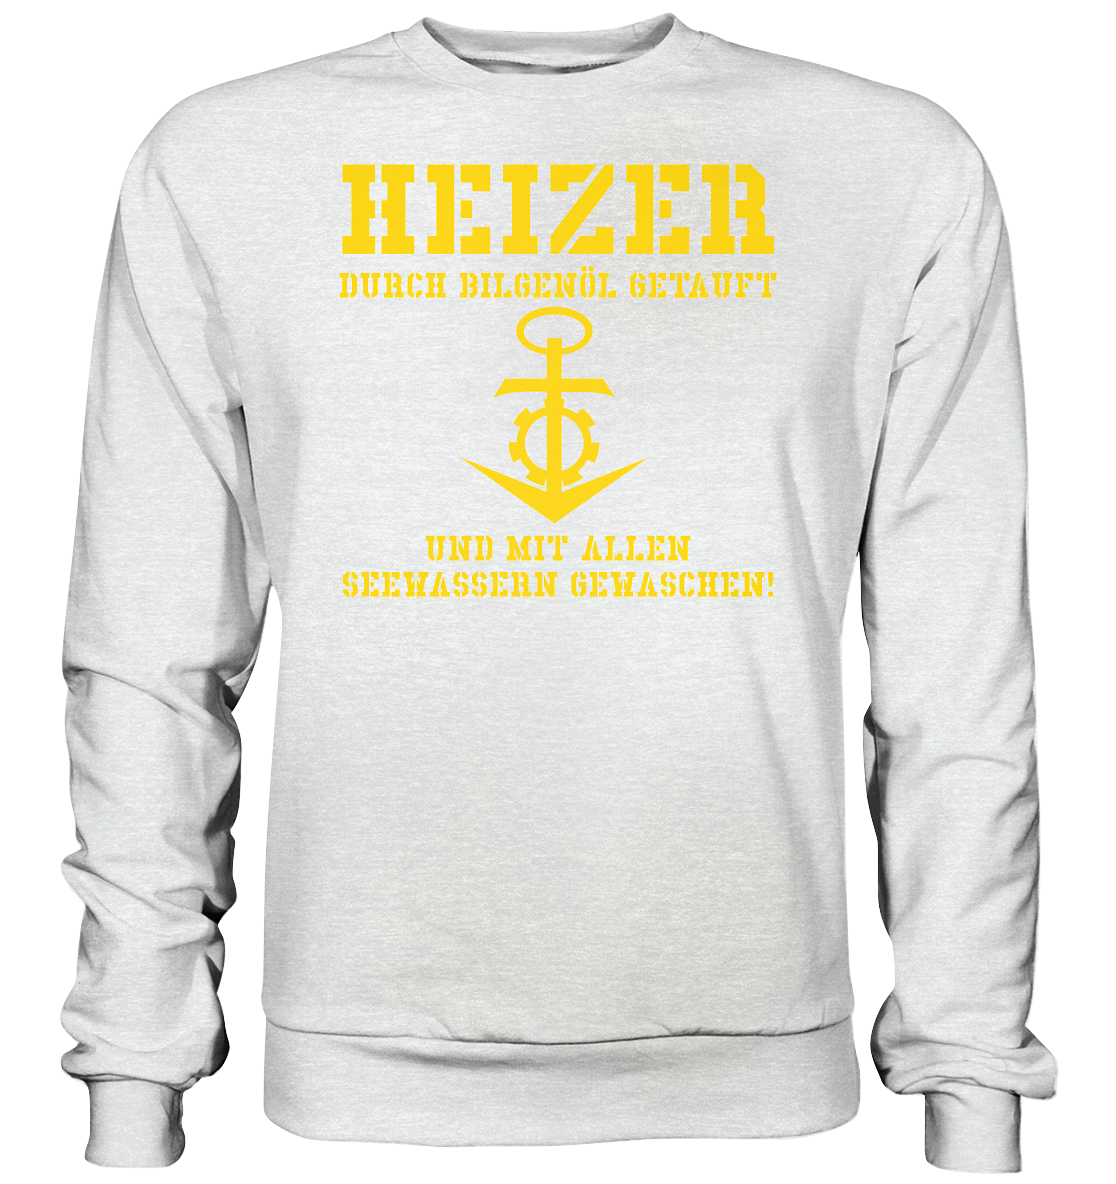 HEIZER - mit Bilgenöl getauft... - Premium Sweatshirt